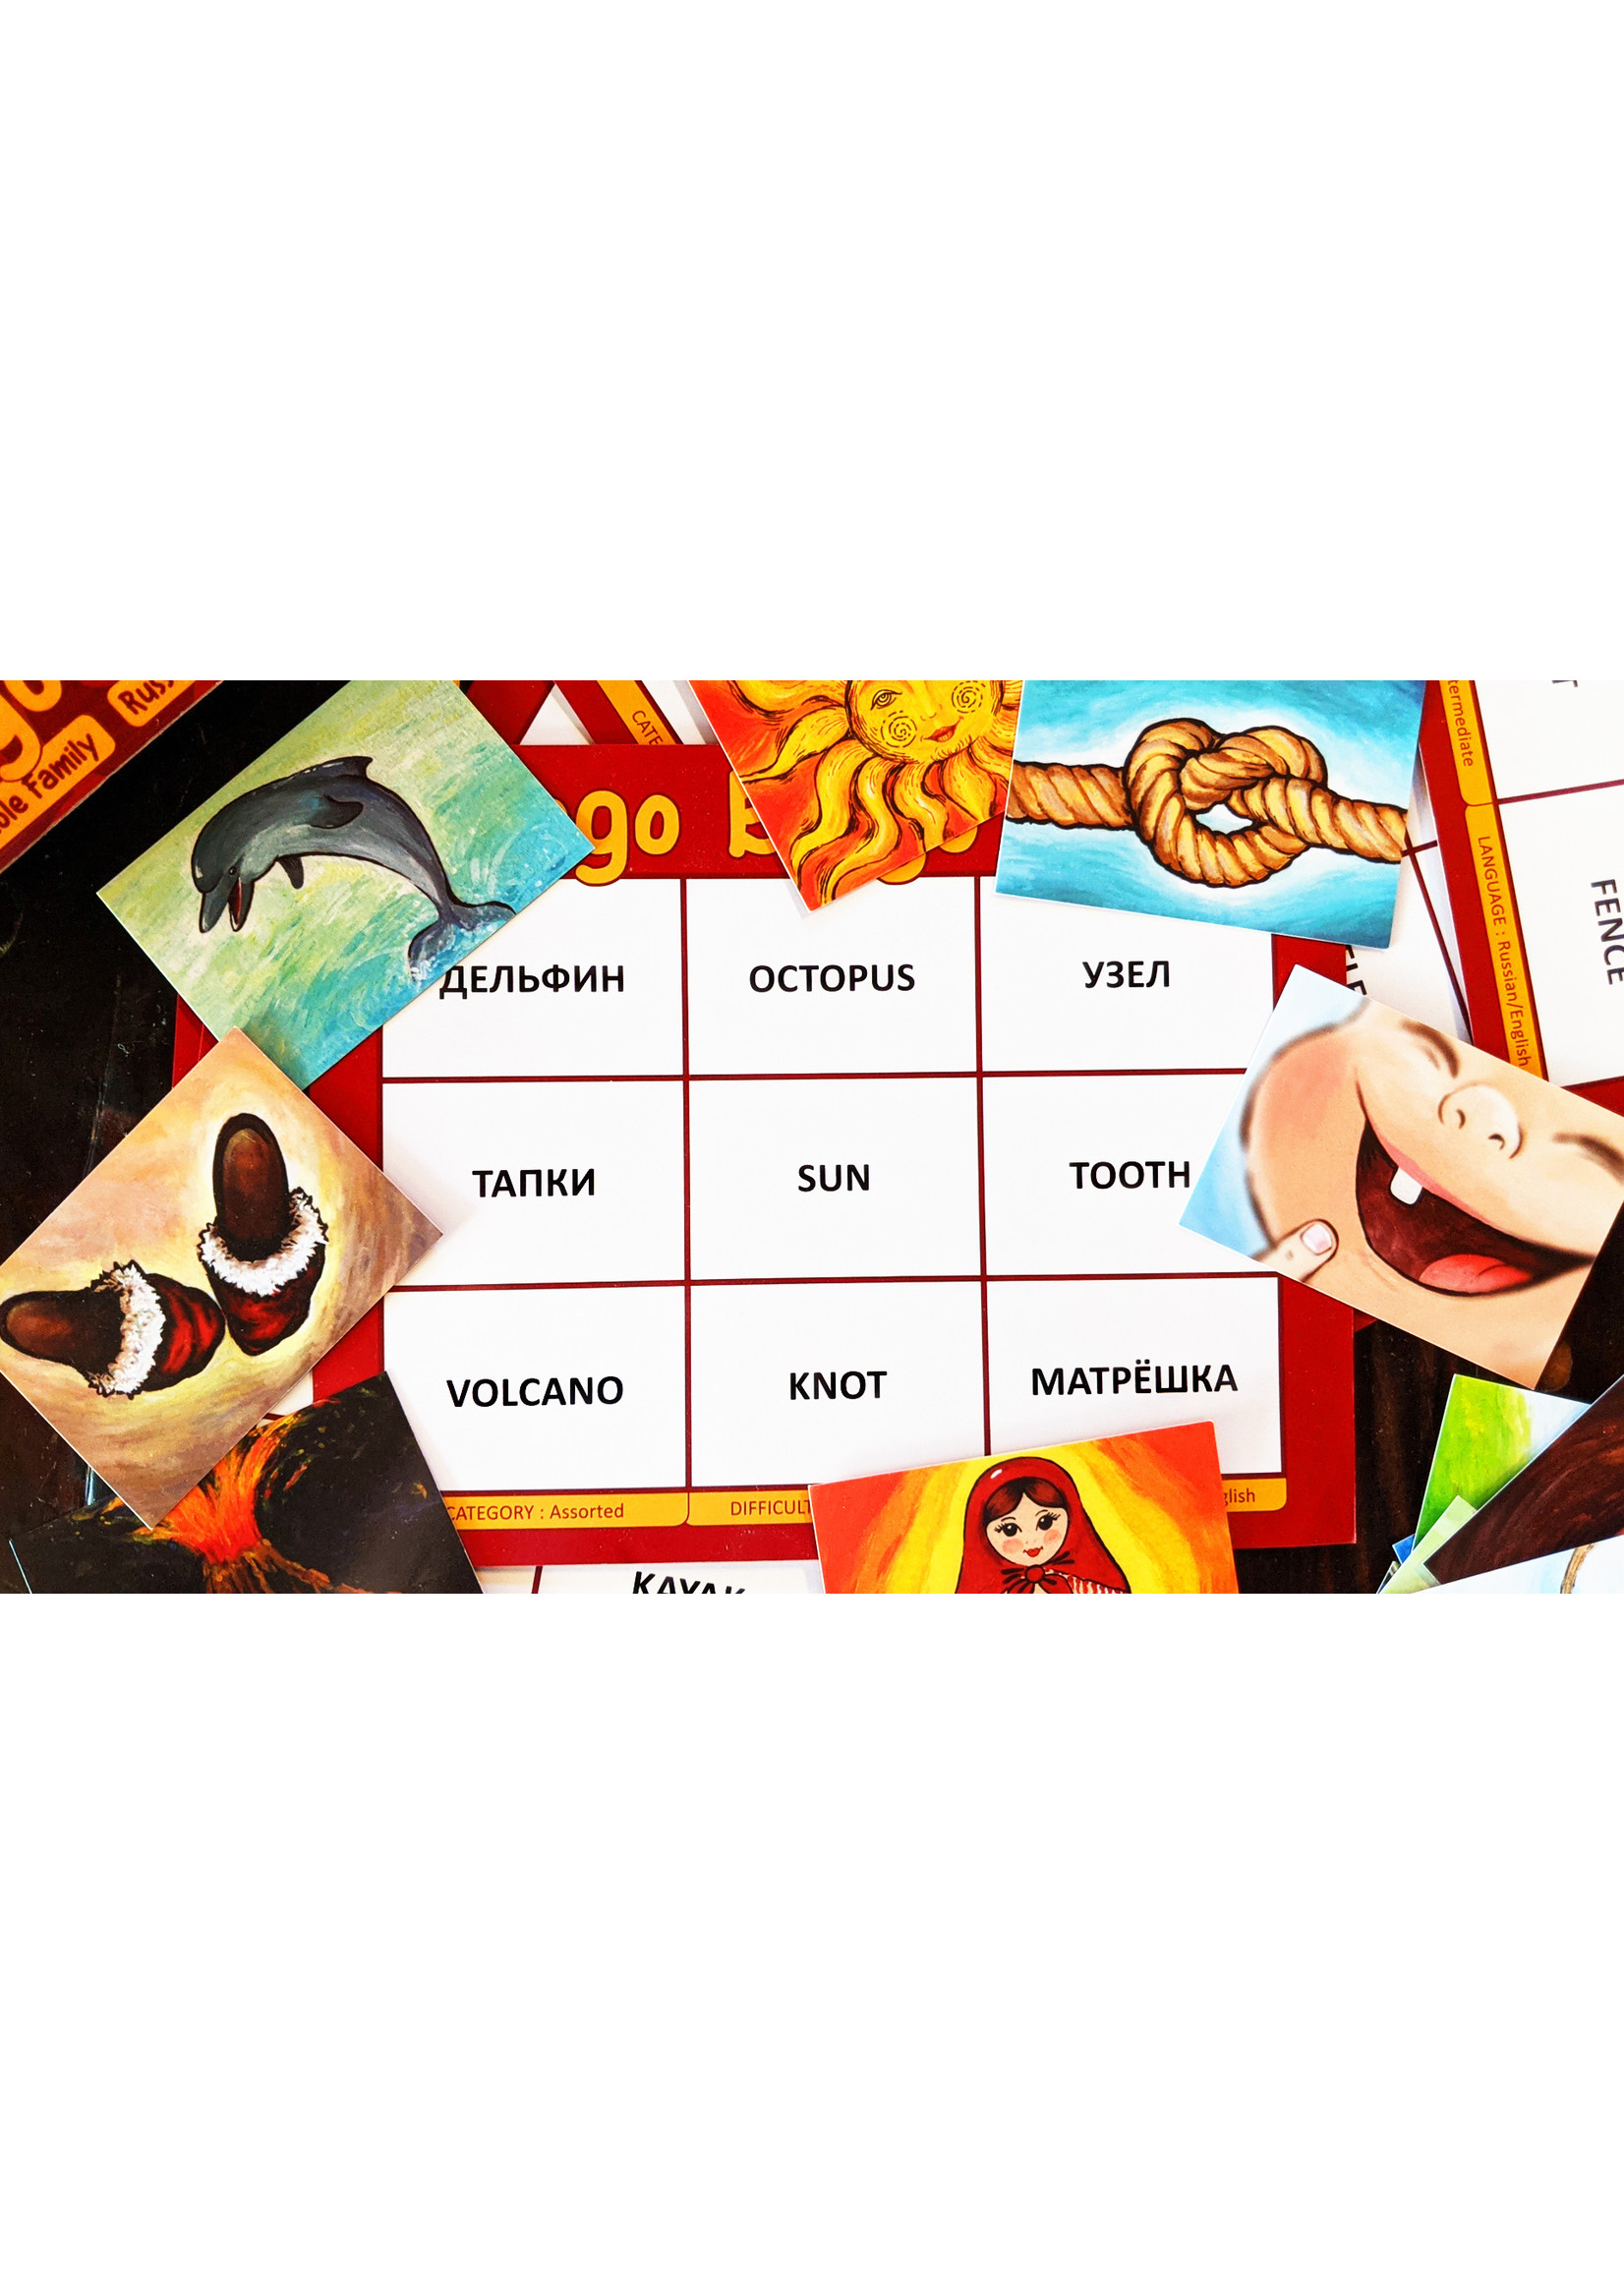 Bilingo Bingo, English\Russian Bilingual Game